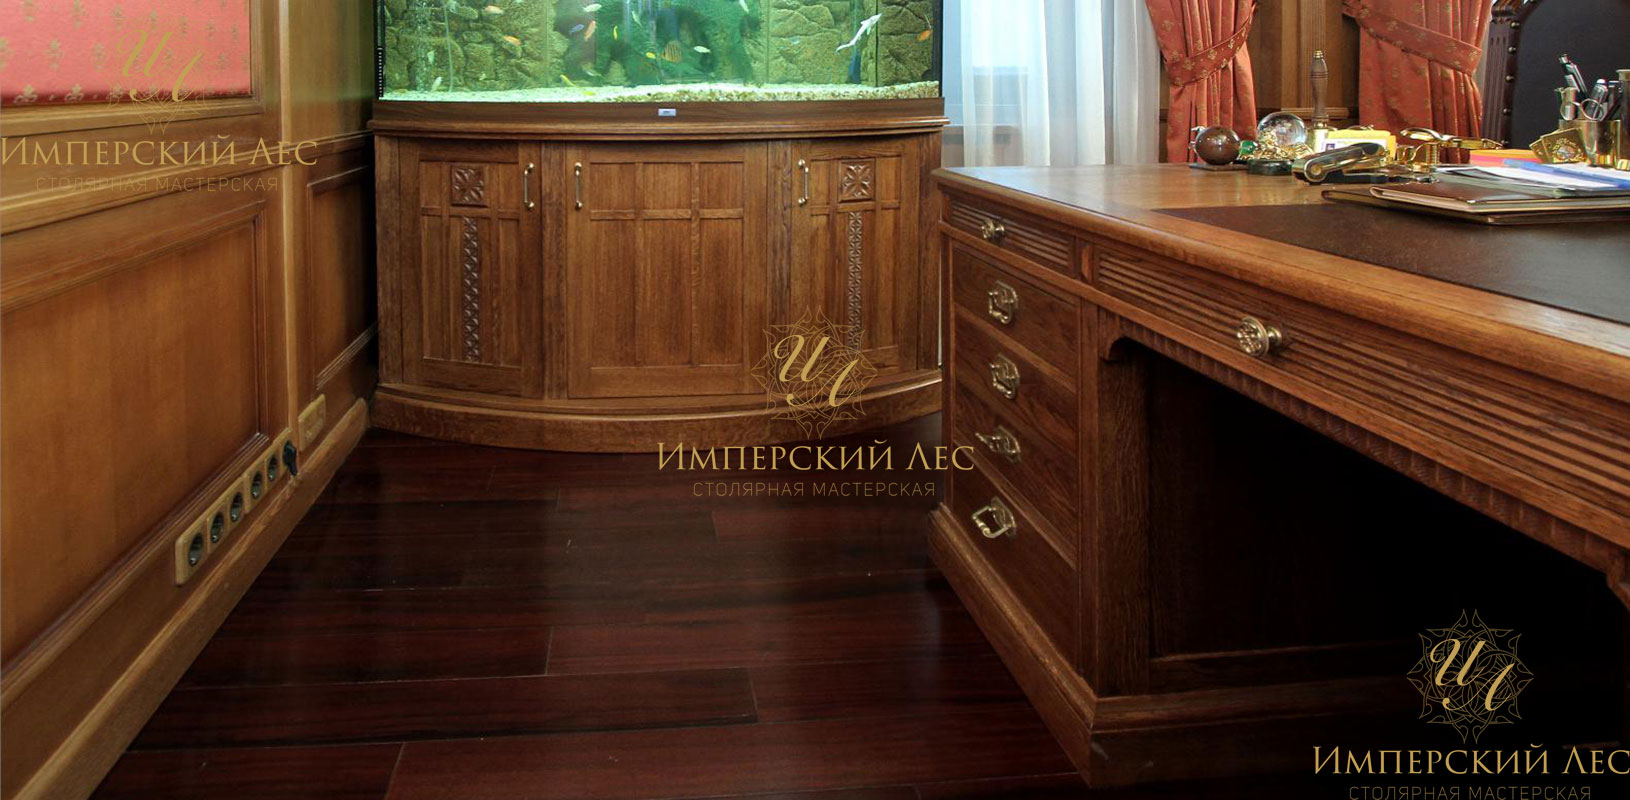 Домашний кабинет в классическом стиле из натурального массива дерева